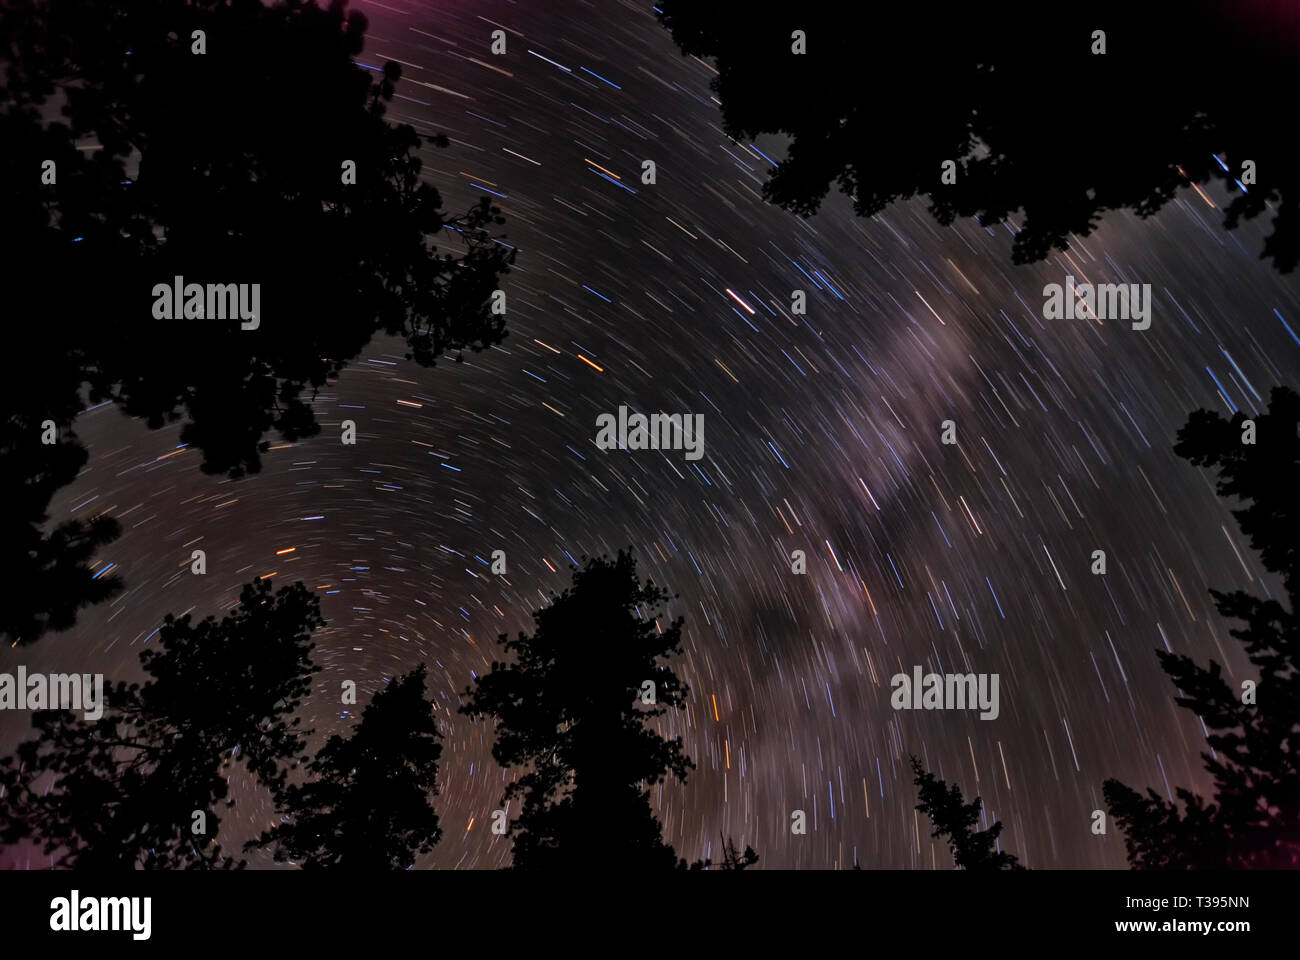 Striature chiare da stelle passando attraverso la notte. Foto Stock